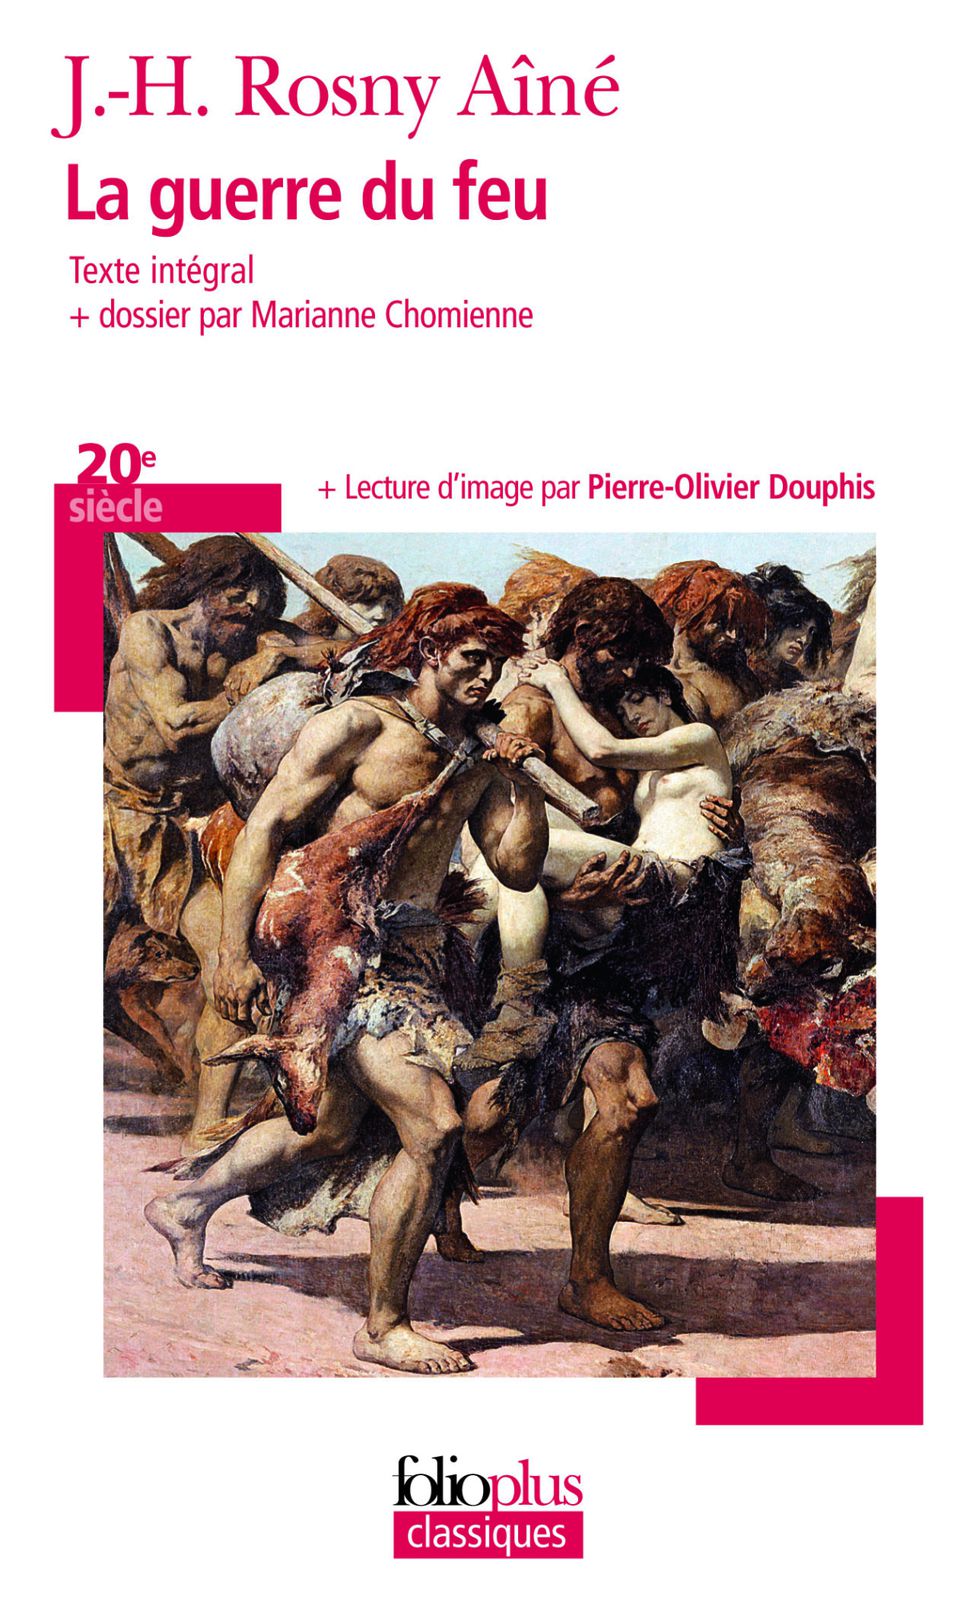 J.-H. Rosny aîné "La Guerre du Feu", dossier et notes par Marianne Chomienne (Folioplus classiques - 2013)